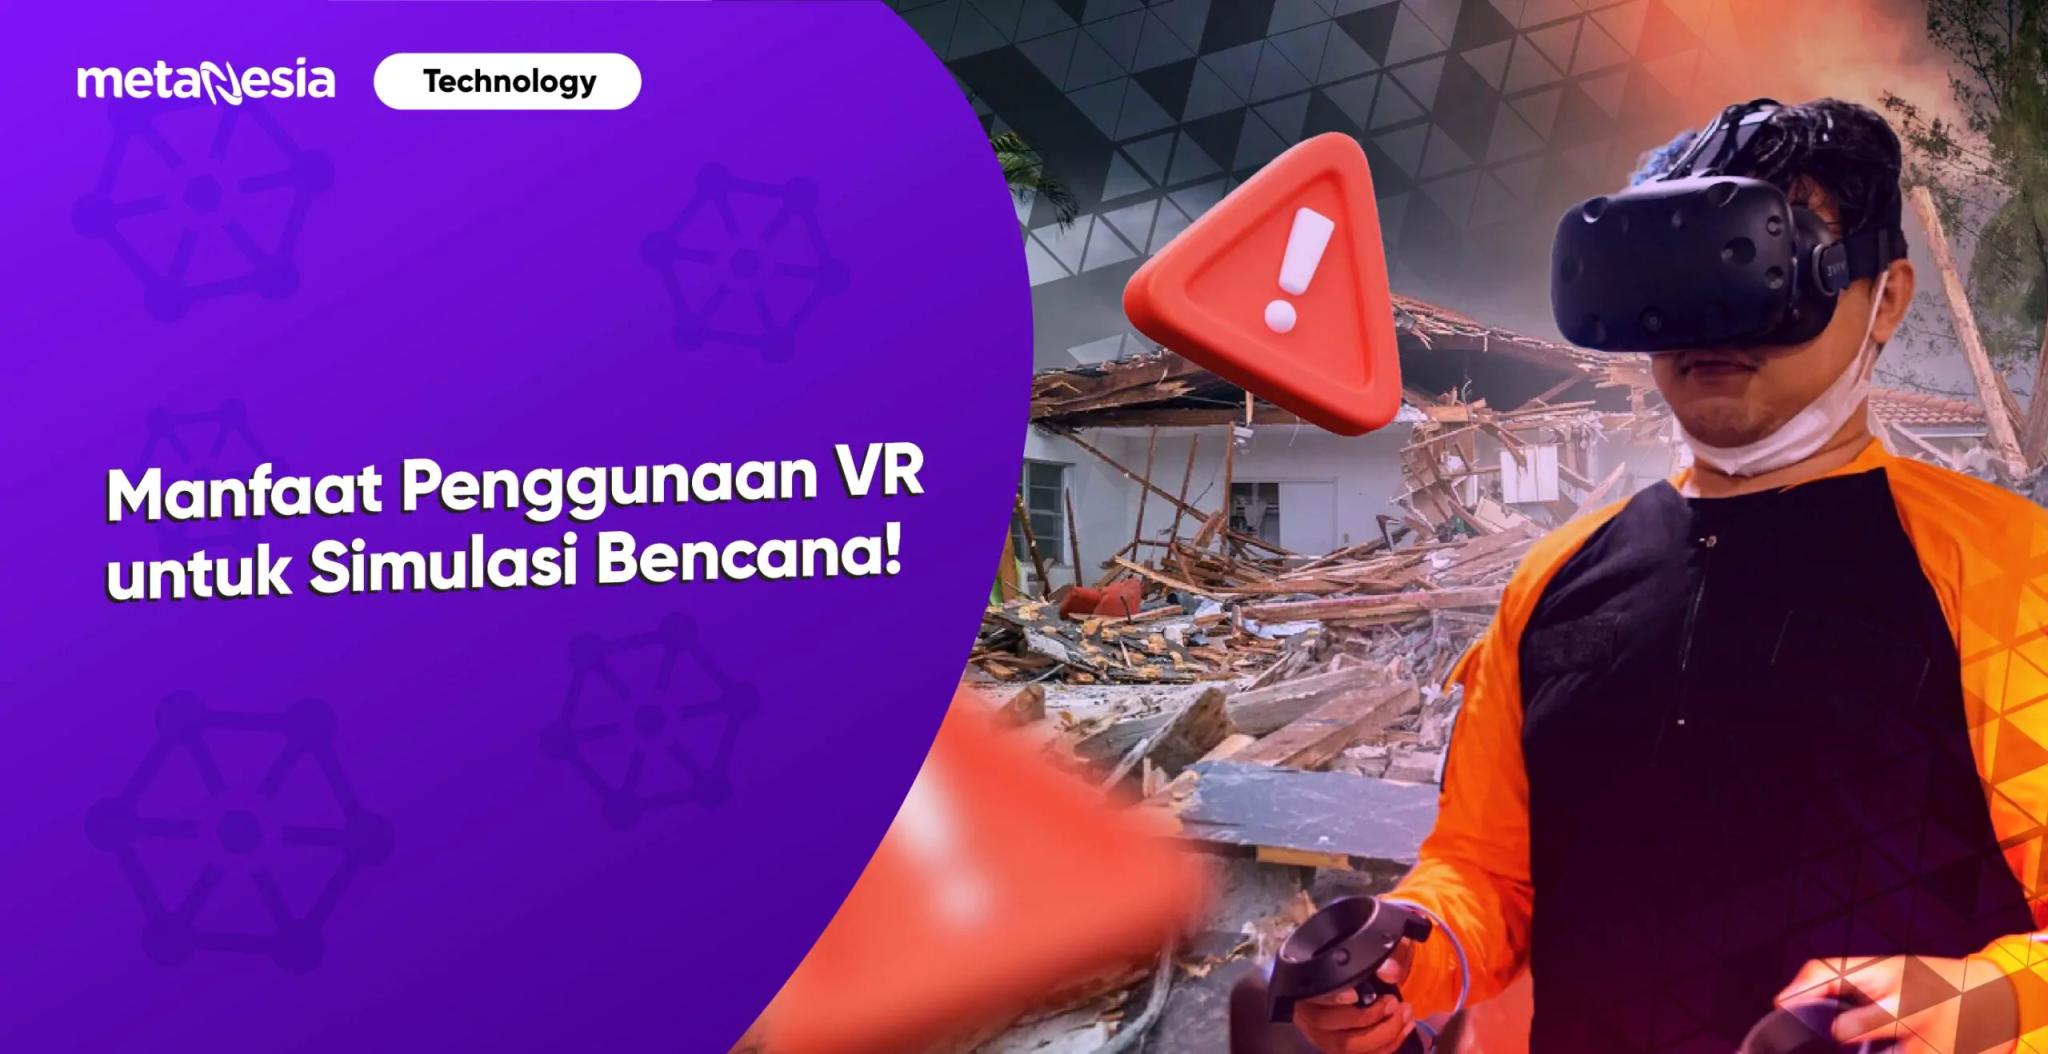 Manfaat Penggunaan VR untuk Simulasi Bencana!